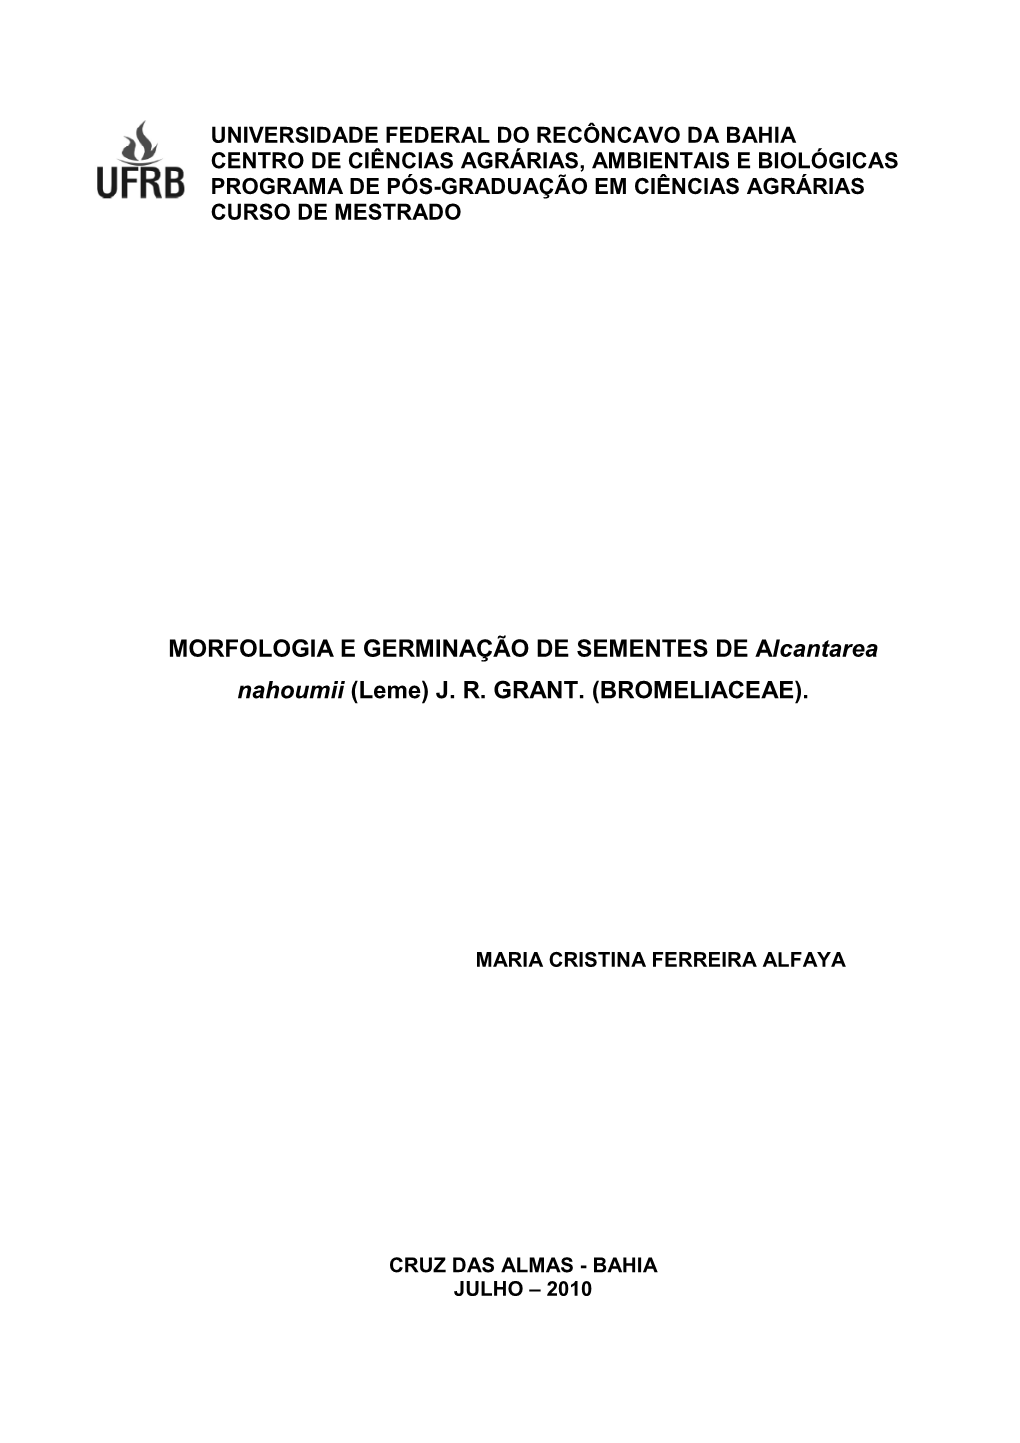 MORFOLOGIA E GERMINAÇÃO DE SEMENTES DE Alcantarea Nahoumii Leme J. R. GRANT. BROMELIACEAE